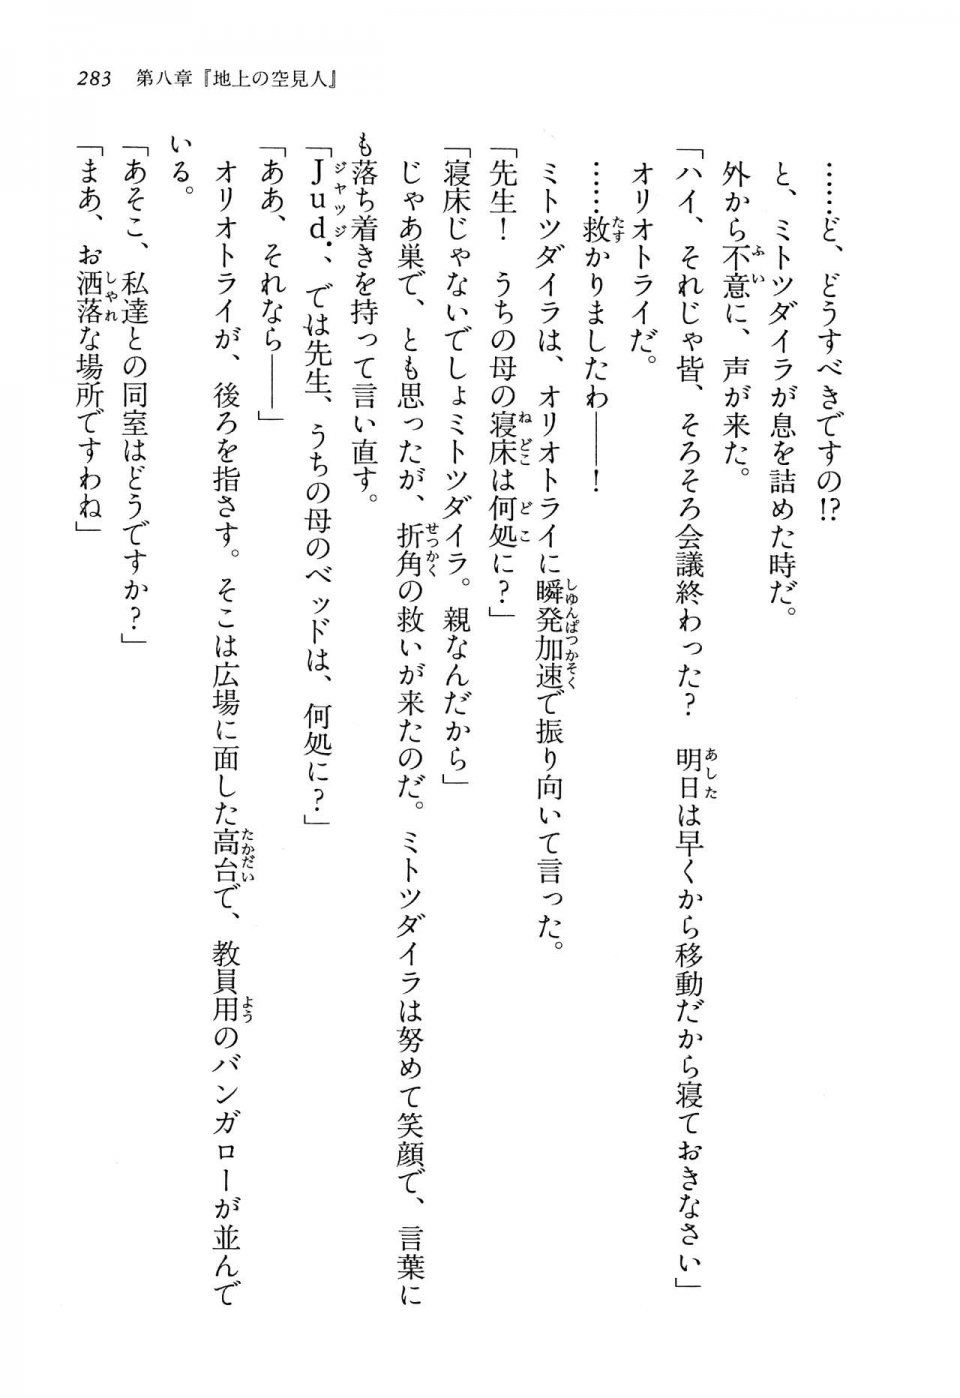 Kyoukai Senjou no Horizon LN Vol 13(6A) - Photo #283